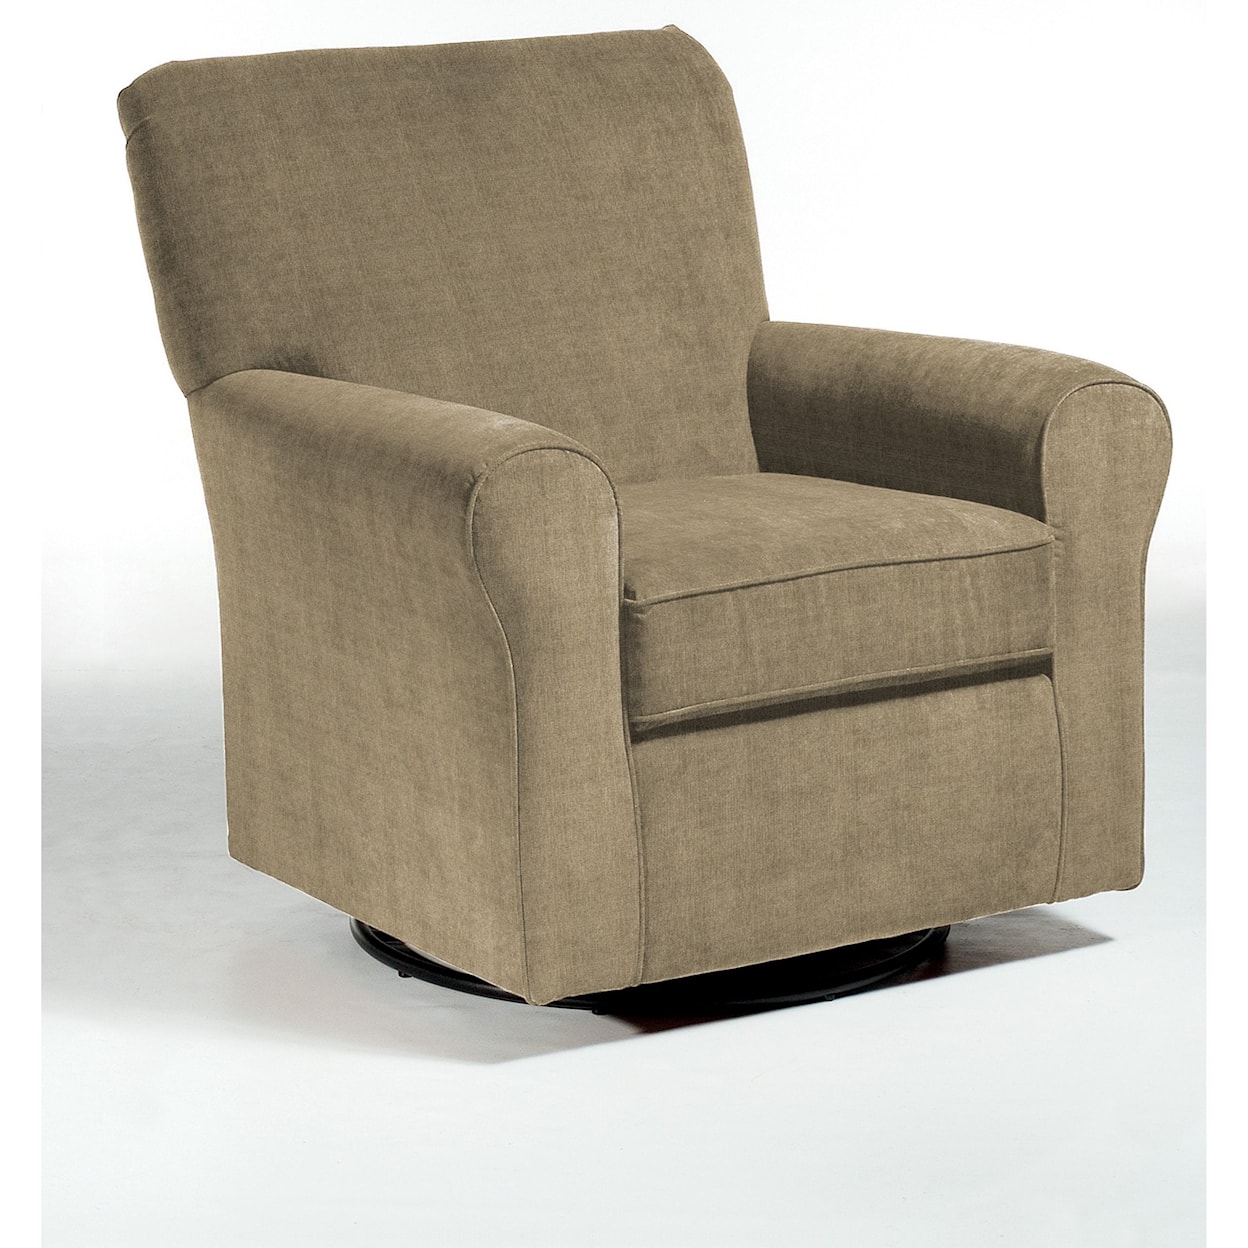 Best Home Furnishings Swivel Glide Chairs Hagen Swivel Glide